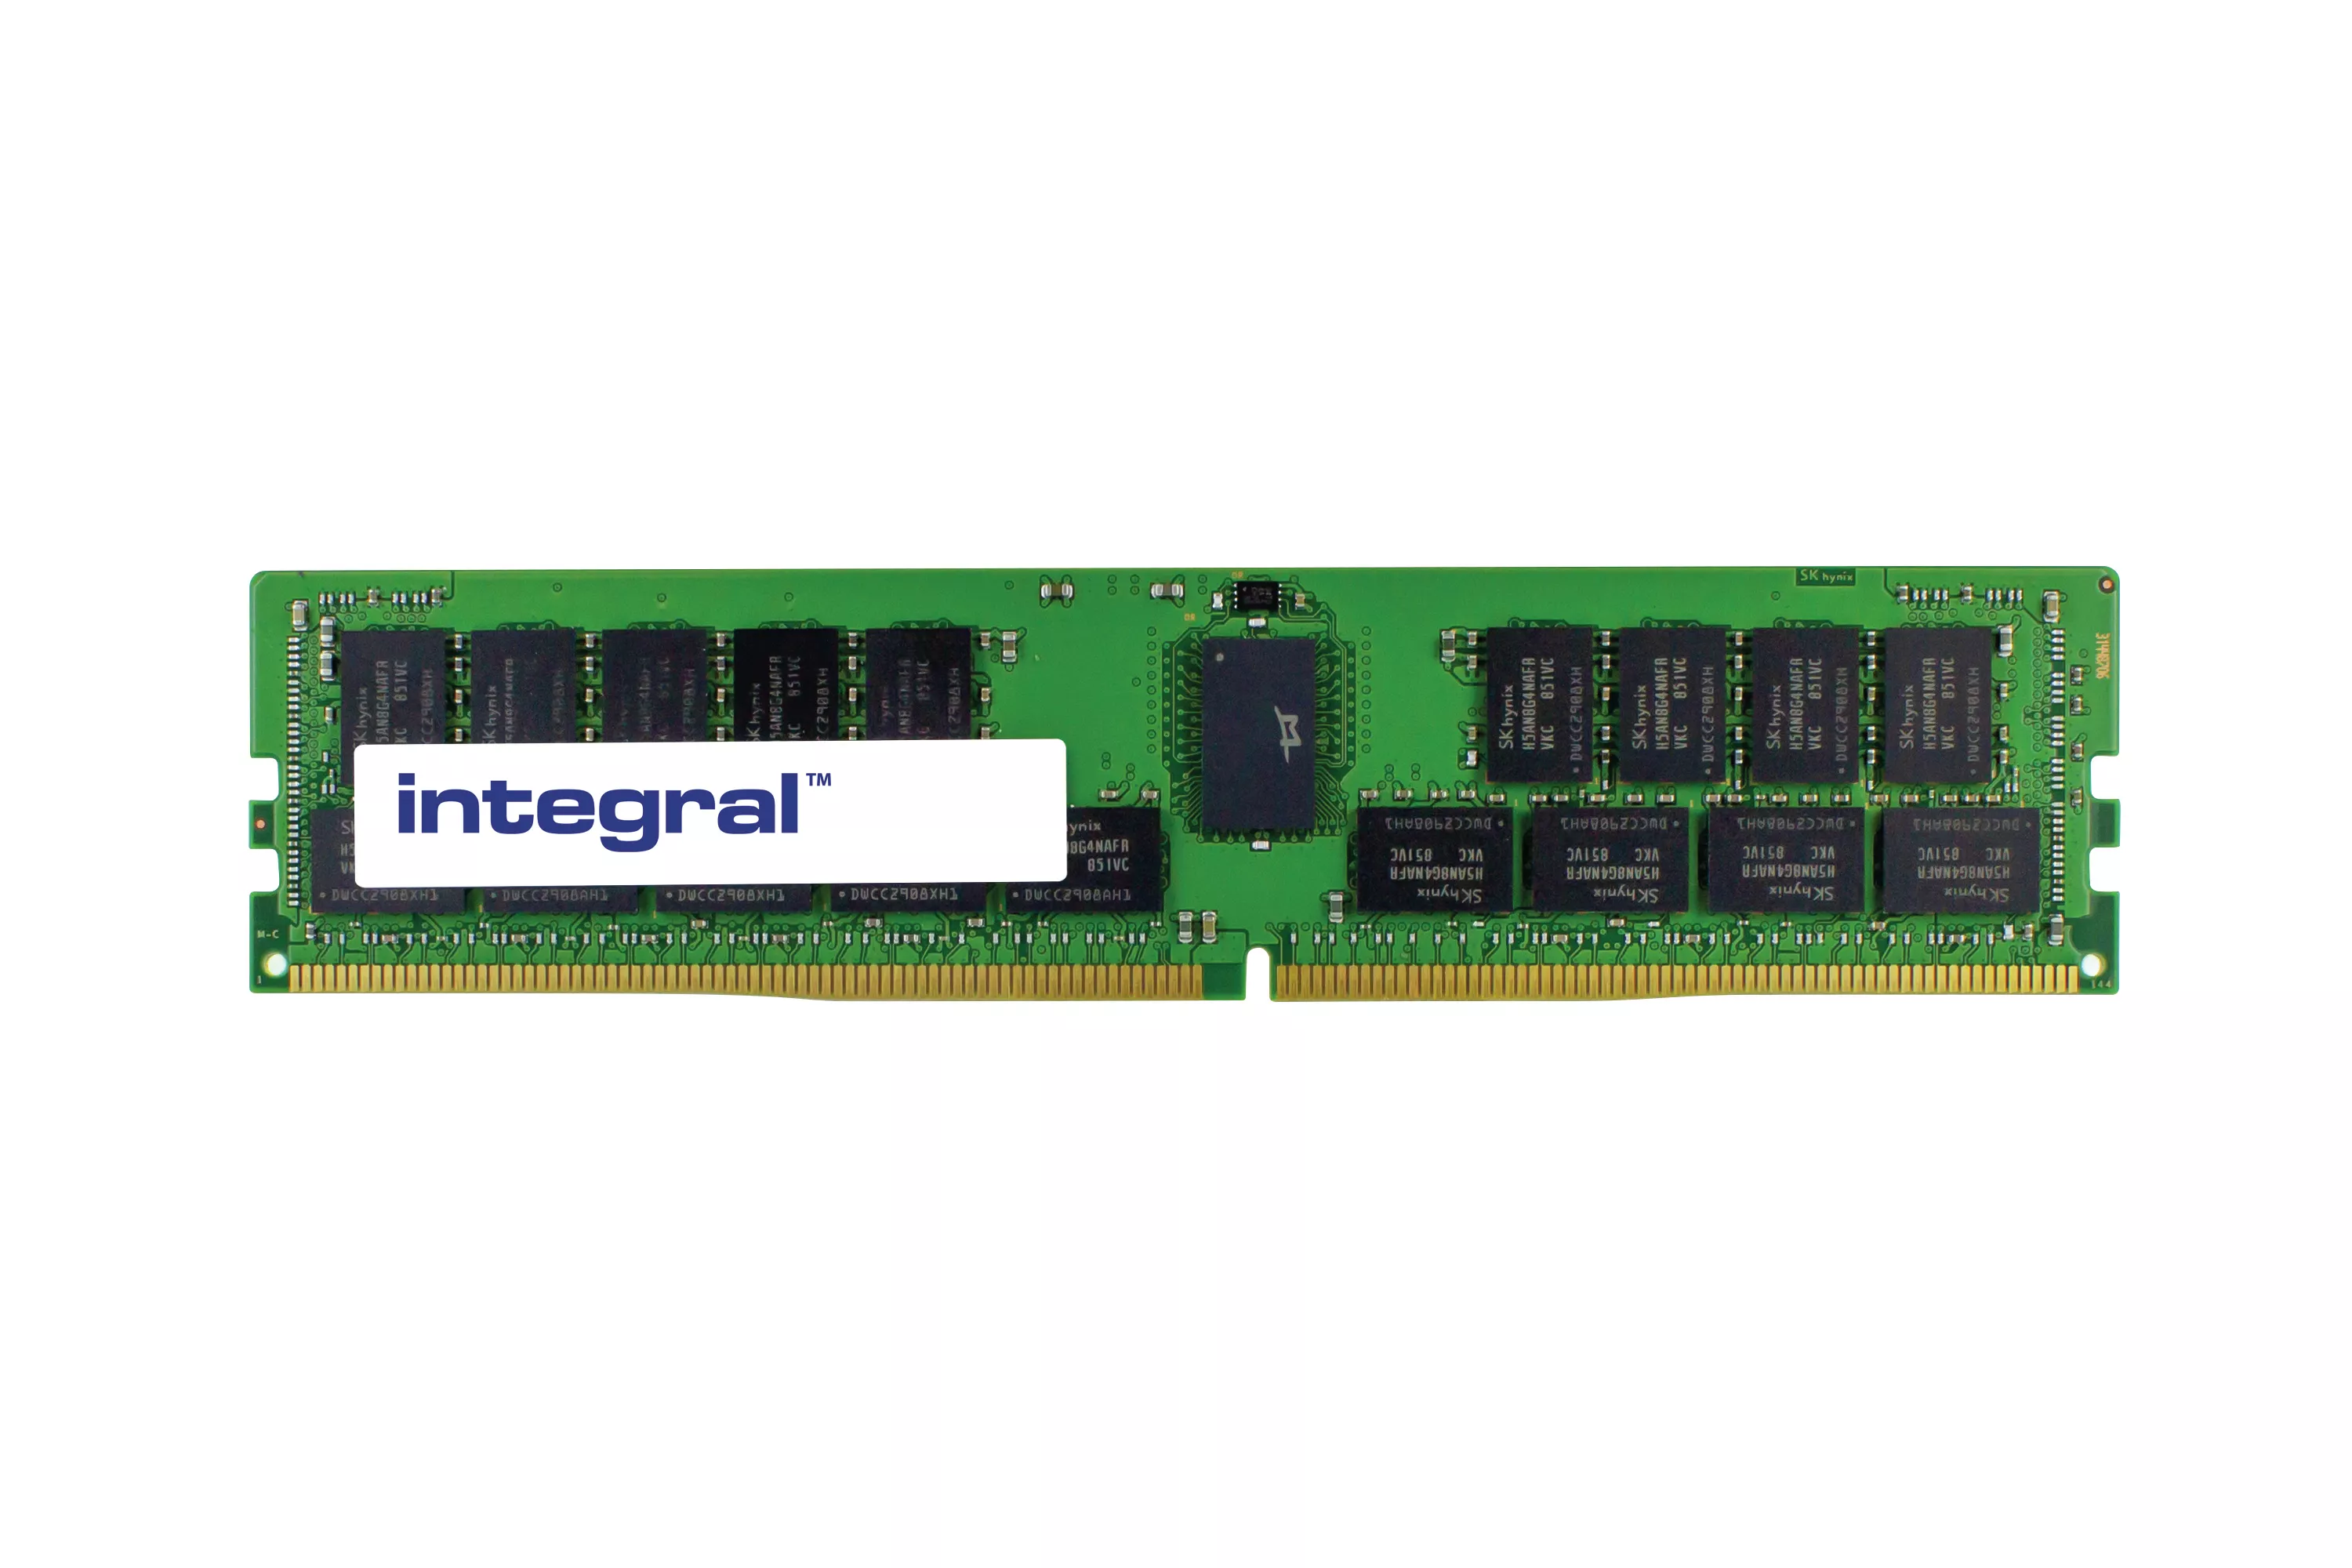 Achat Integral 32GB SERVER RAM MODULE DDR4 2133MHZ PC4 et autres produits de la marque Integral